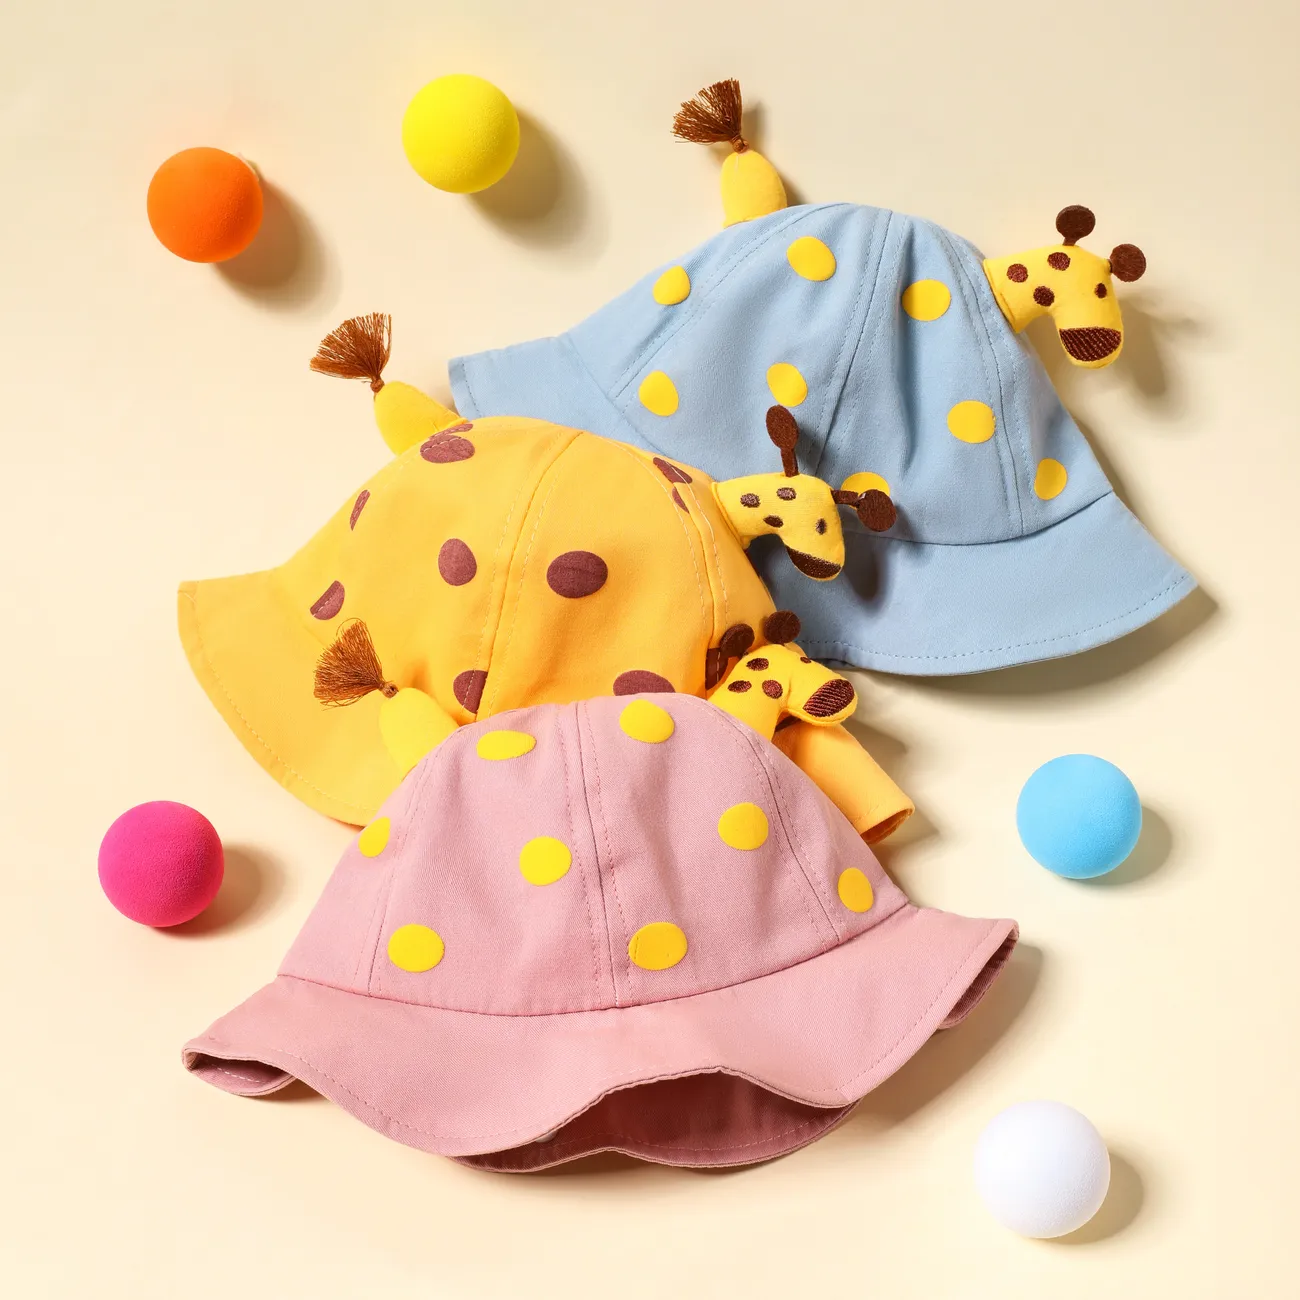 Sombrero de pescador de sombrilla de ciervo lindo para bebés/niños pequeños Rosado big image 1